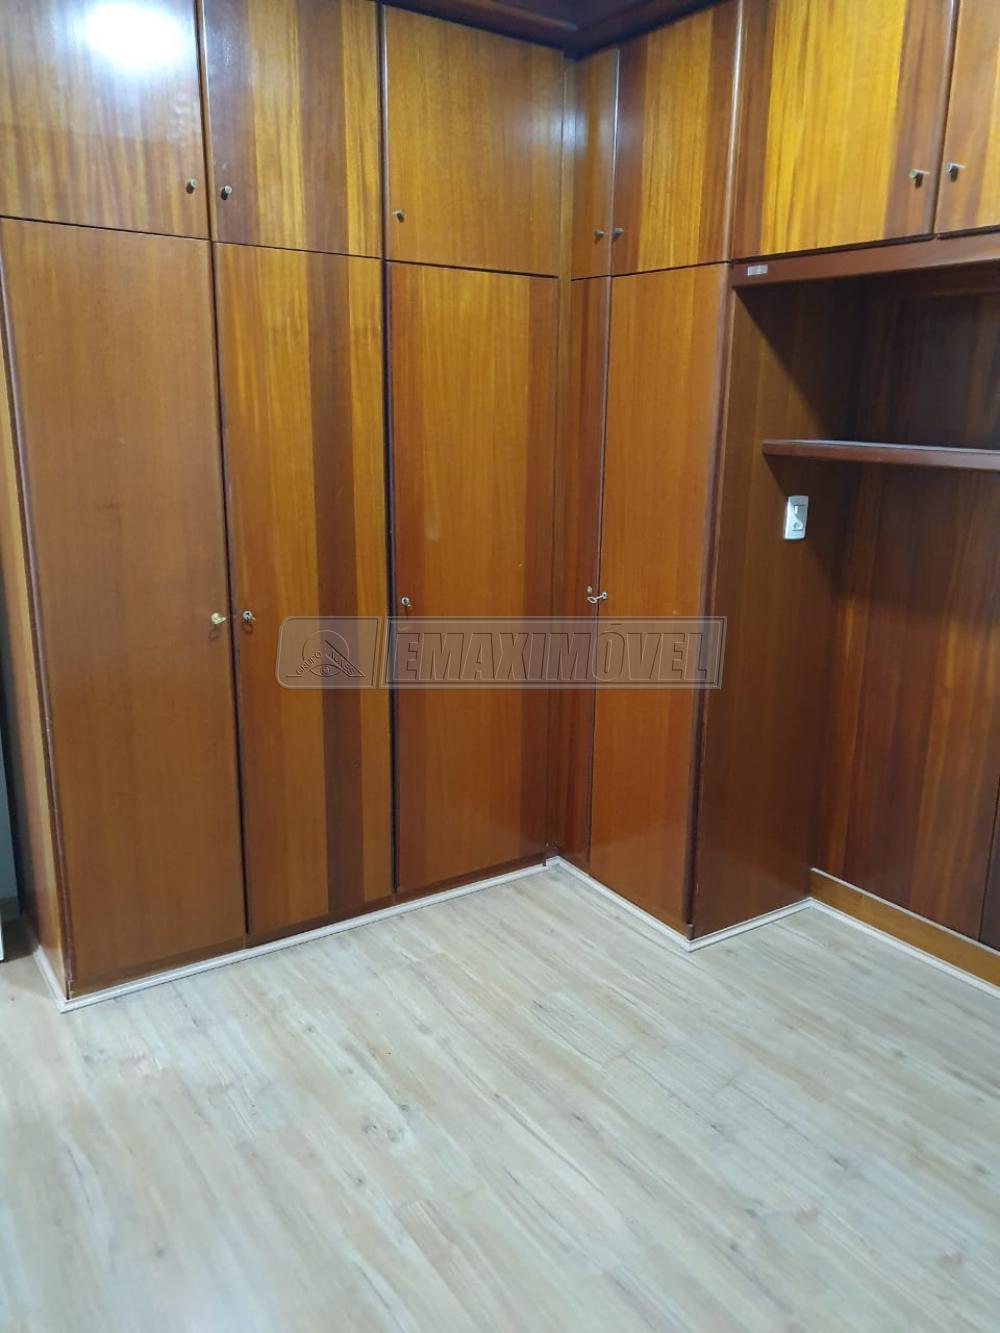 Alugar Apartamento / Padrão em Sorocaba R$ 650,00 - Foto 9